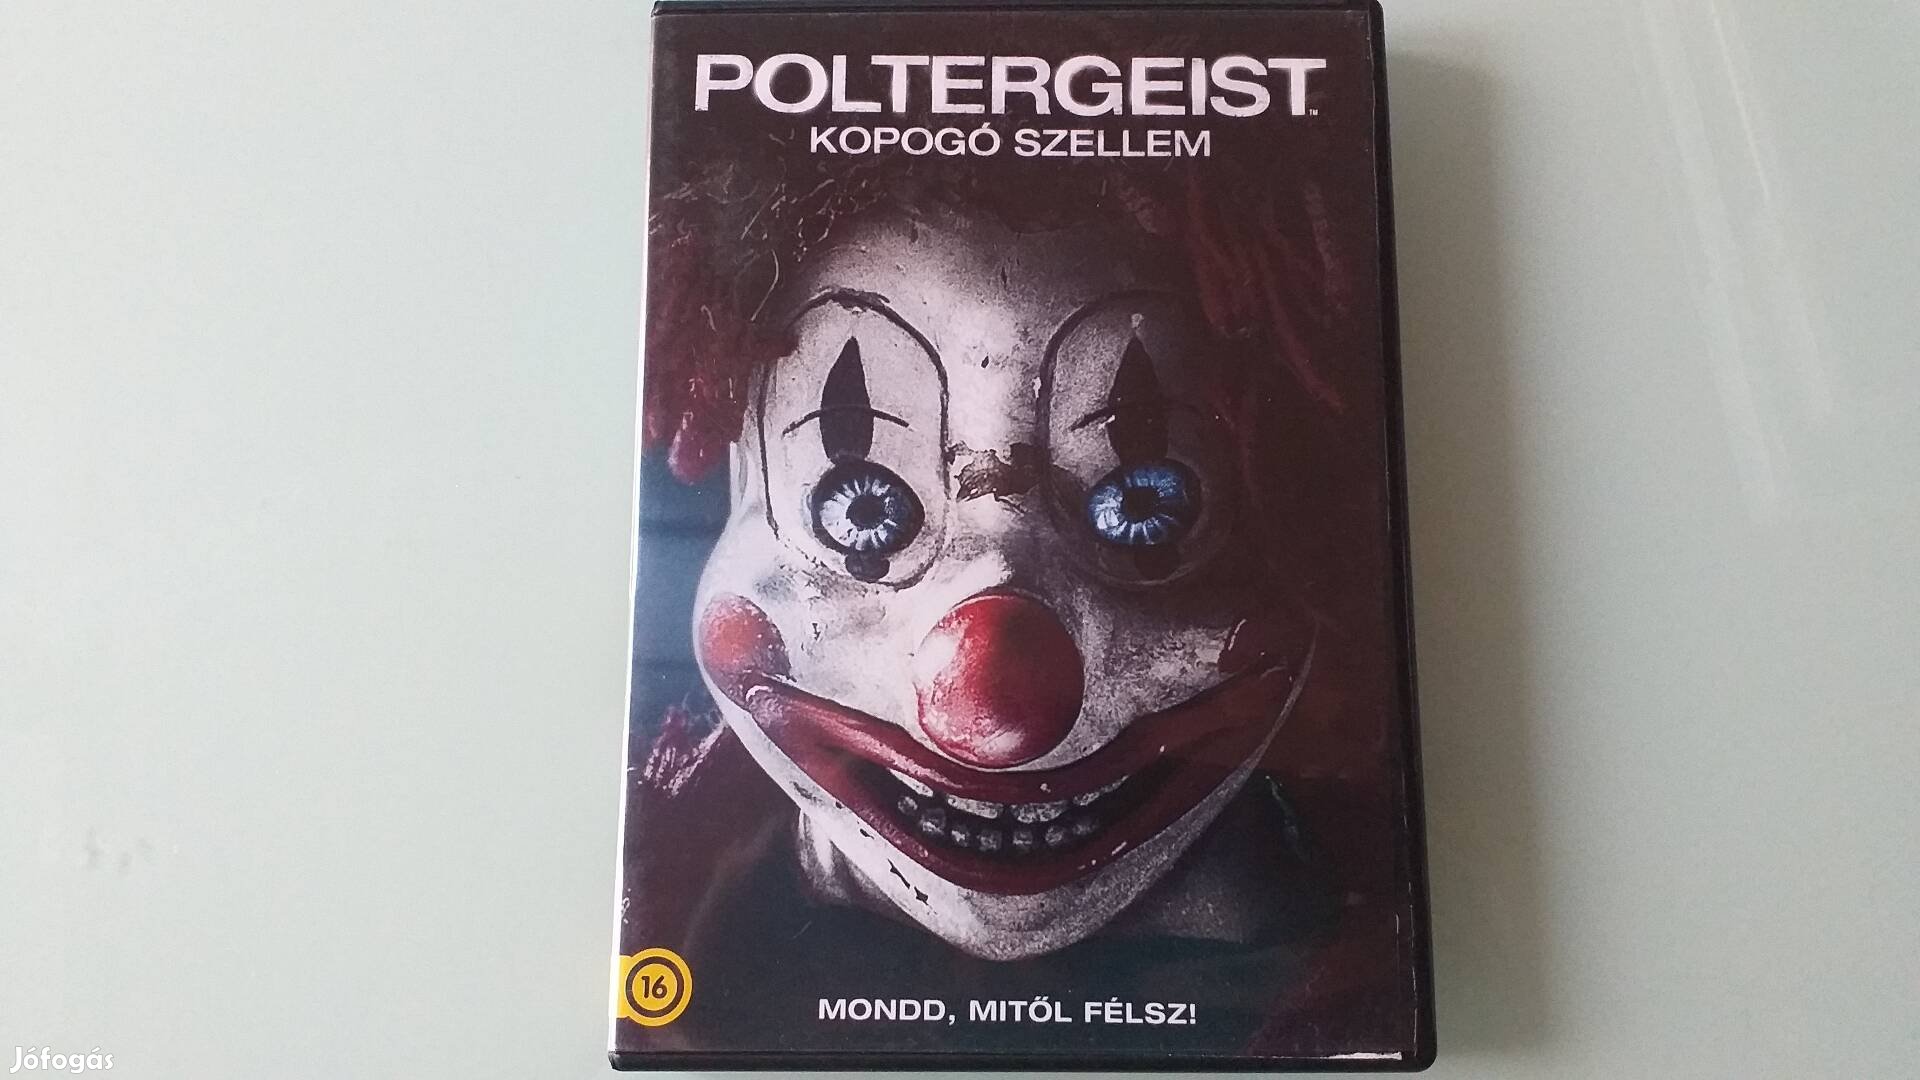 Poltergeist kopogó szellem DVD film